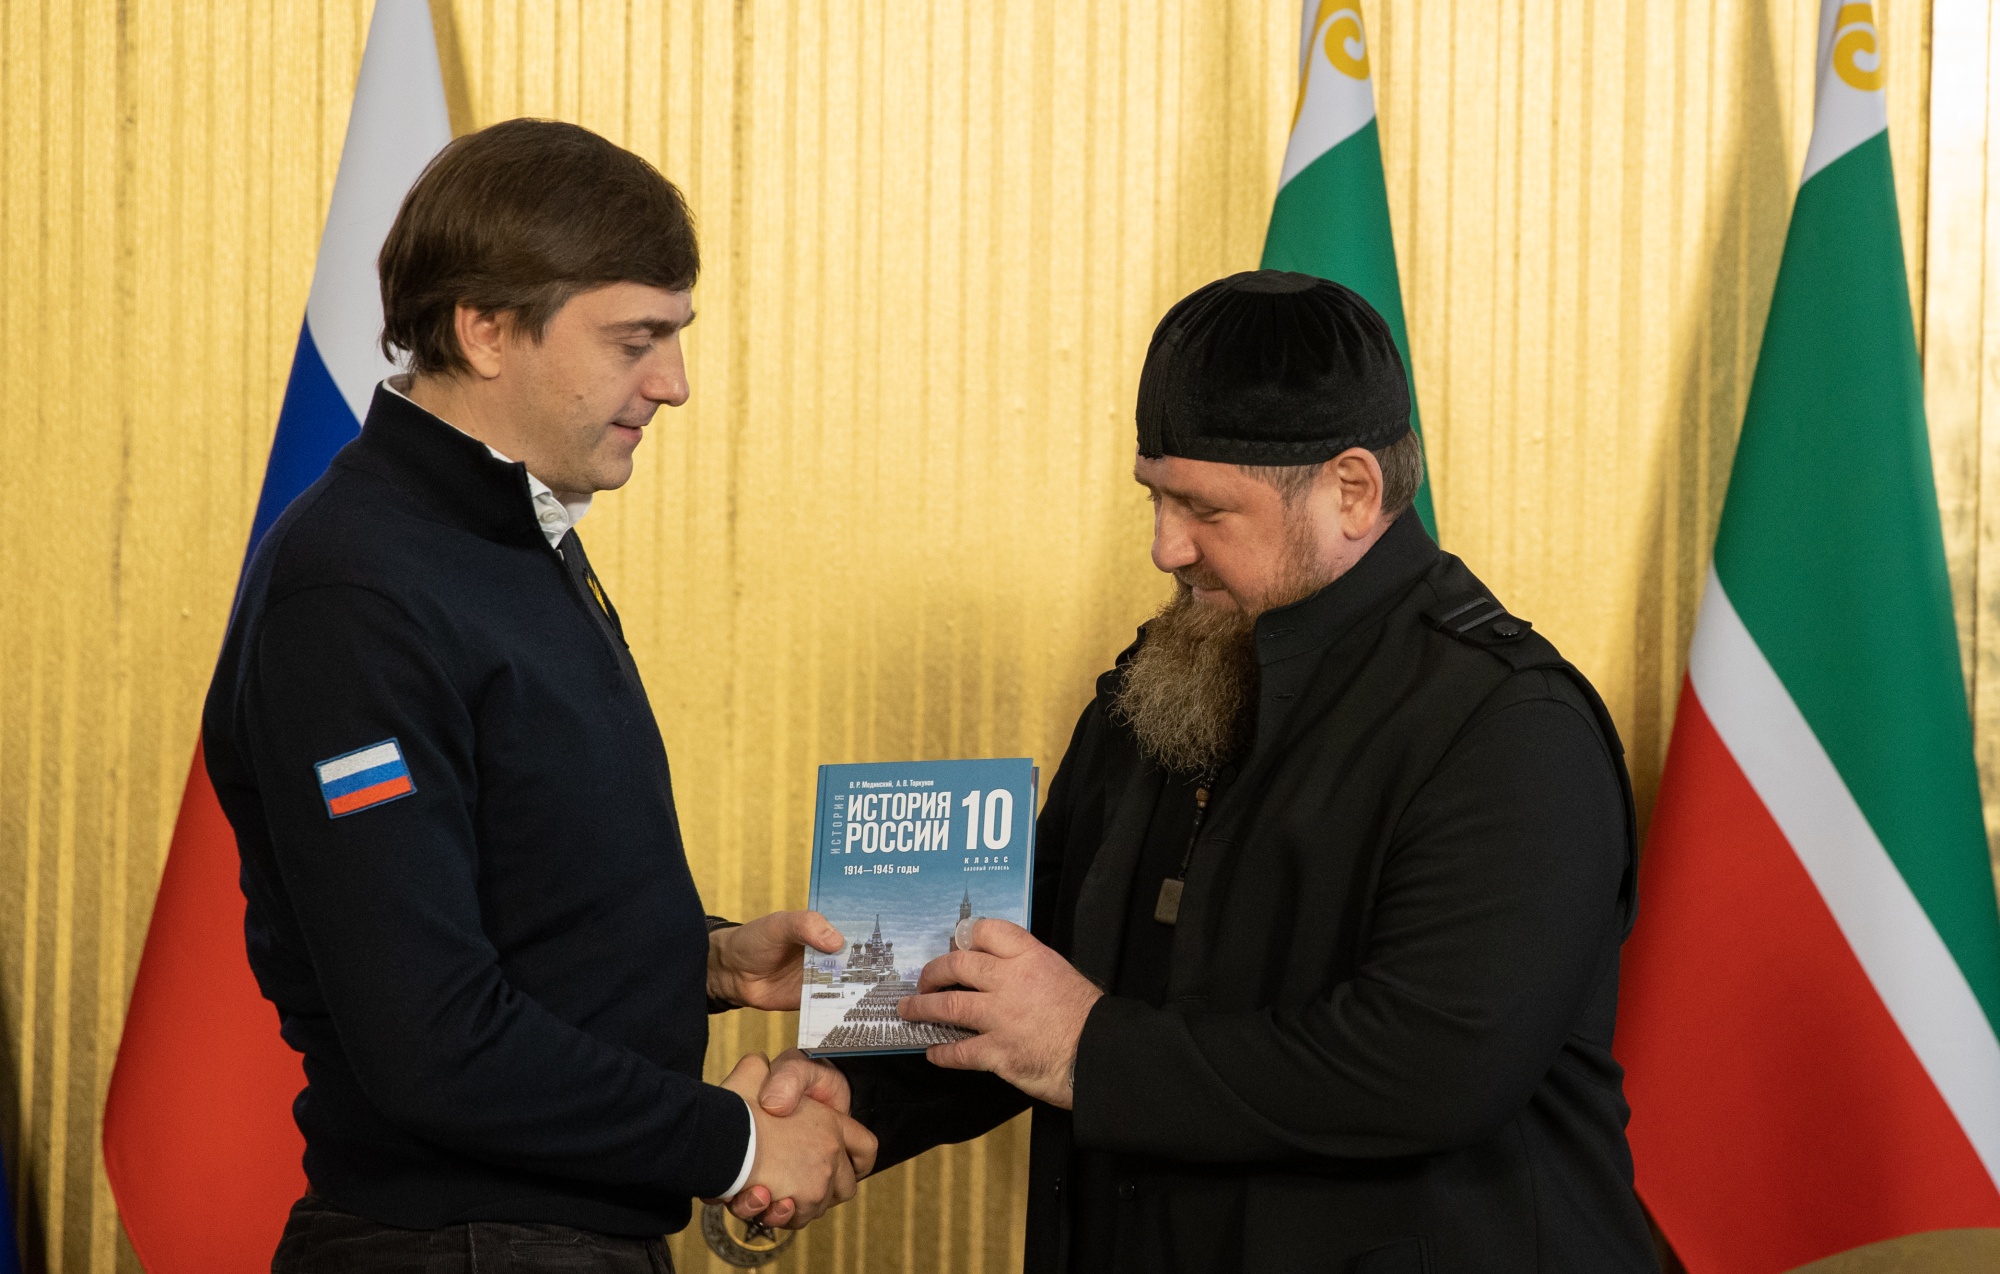 Сергей Кравцов обсудил развитие сфер образования и воспитания Чеченской и Карачаево-Черкесской республик на встречах с главами регионов